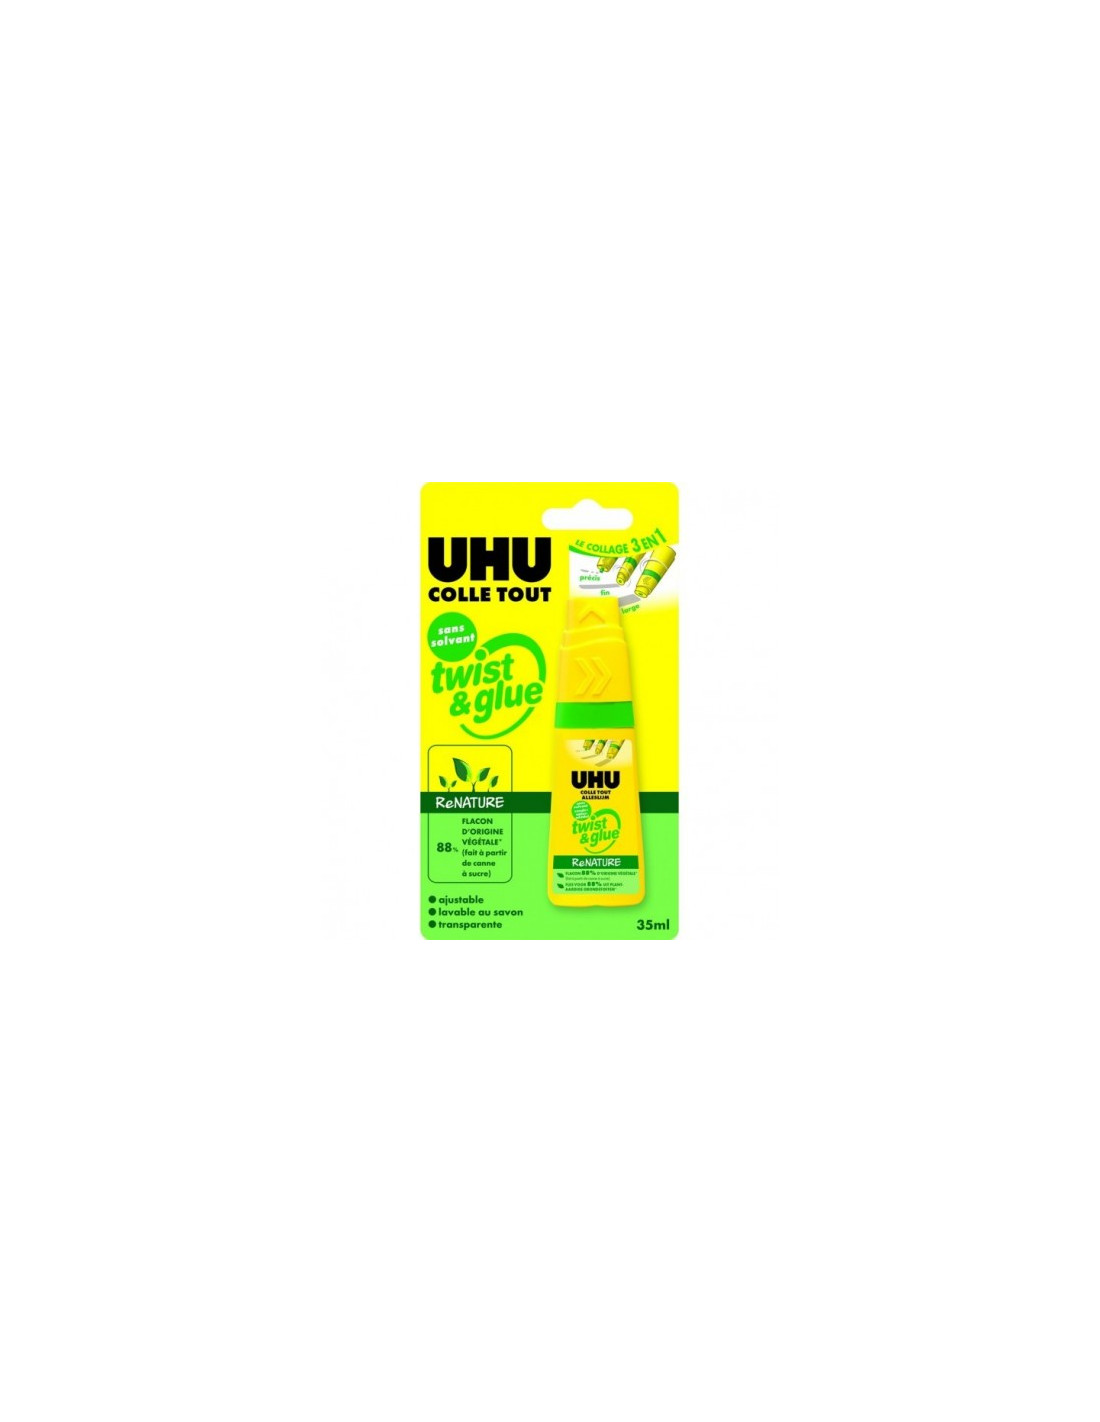 UHU Colle twist and glue_35ml - UHU - - 61308045Générique